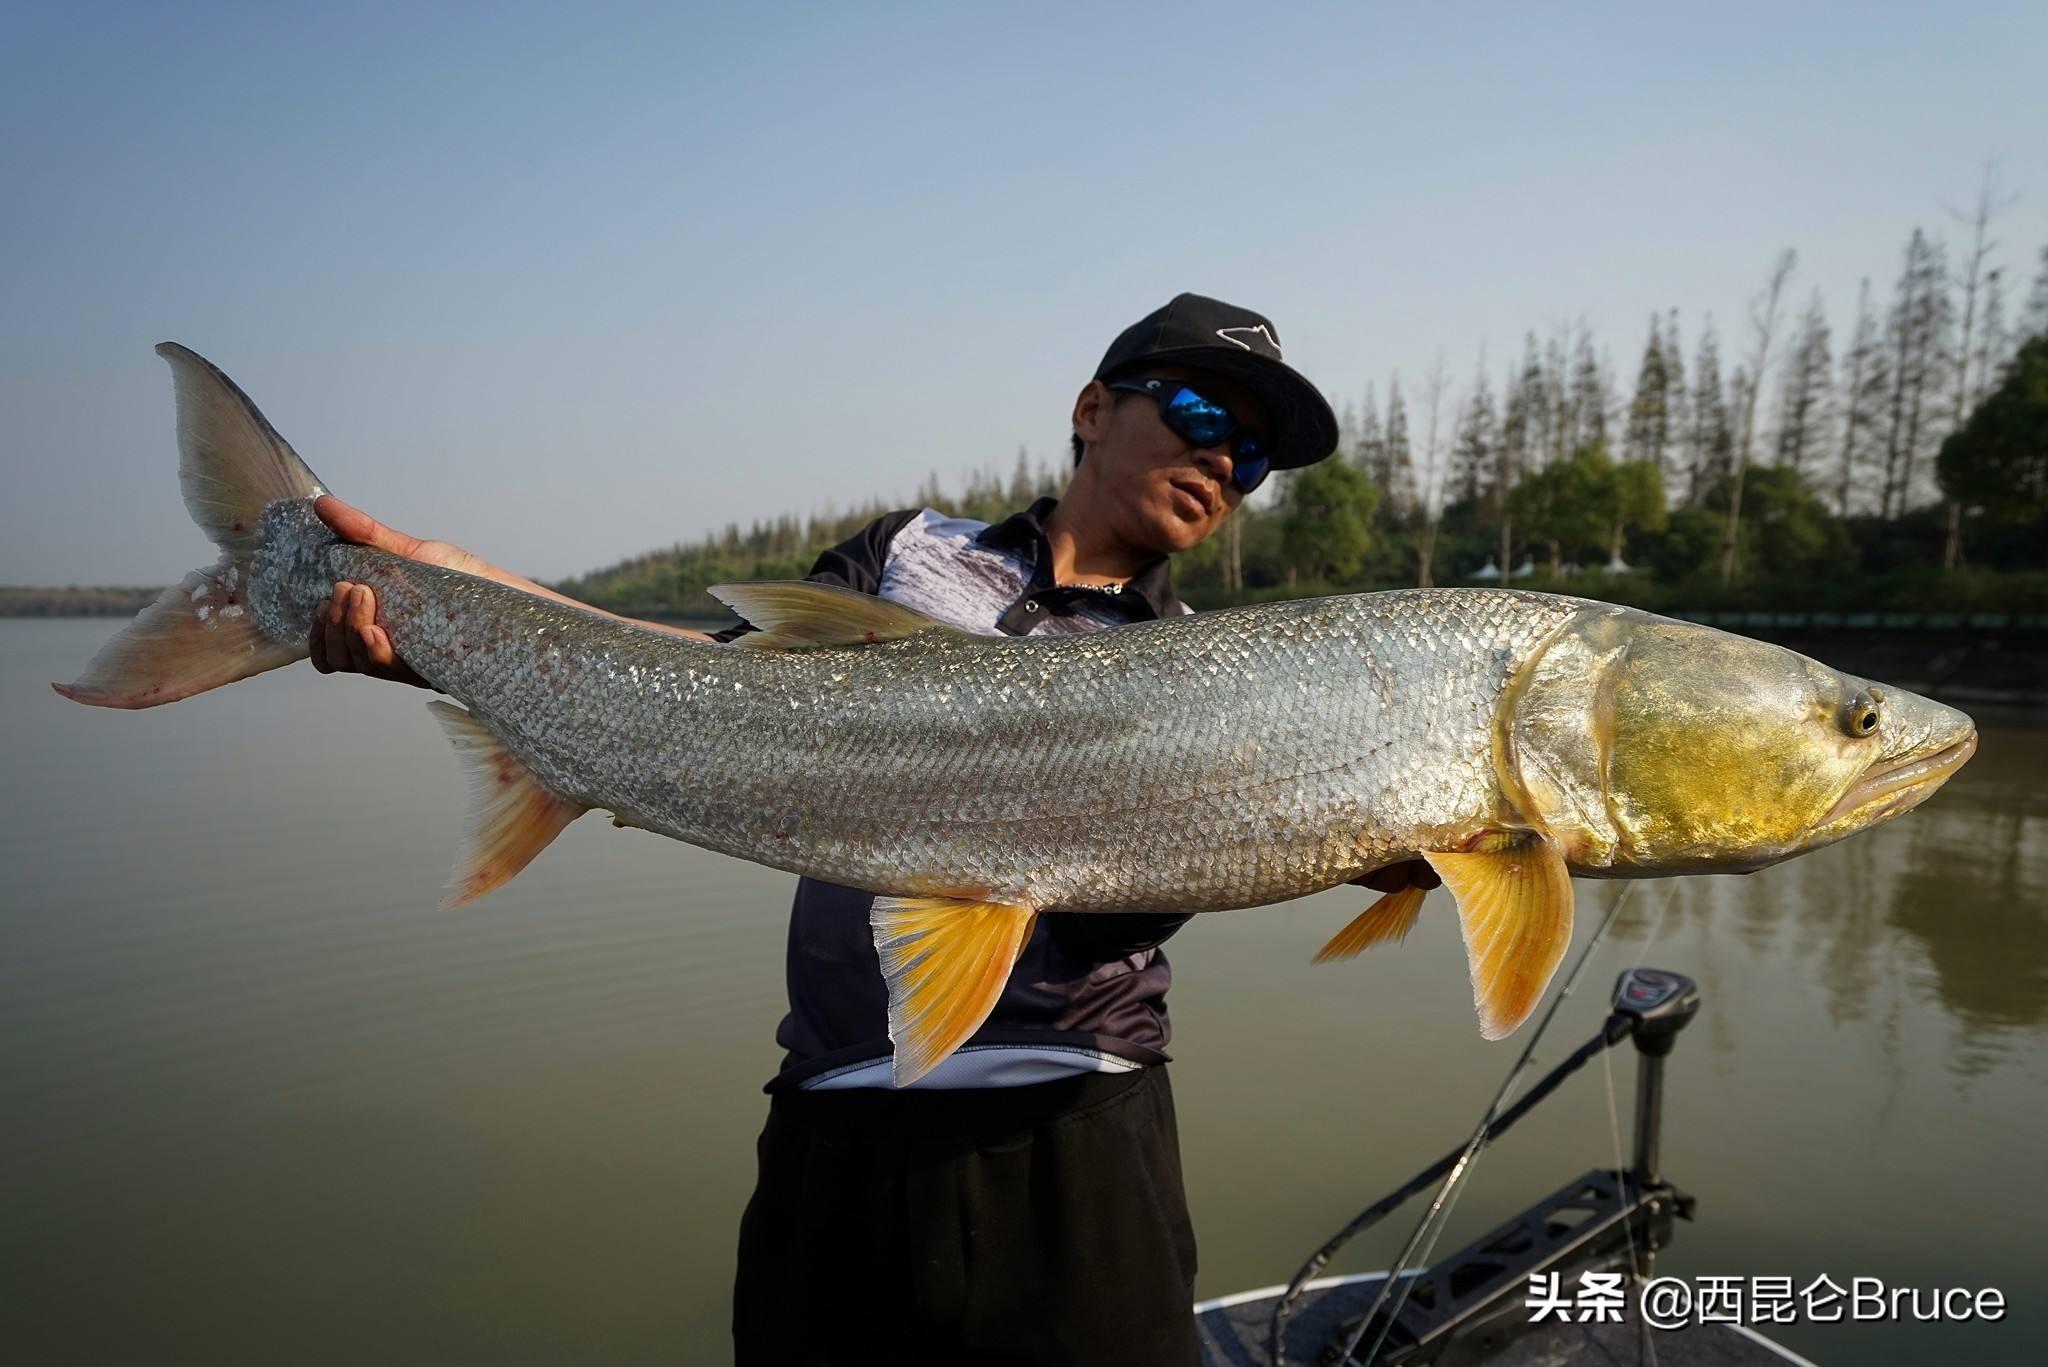 柬埔寨渔民在湄公河流域捕到一条近300公斤重的黄貂鱼 是有记录以来世界上最大淡水鱼 - 神秘的地球 科学|自然|地理|探索